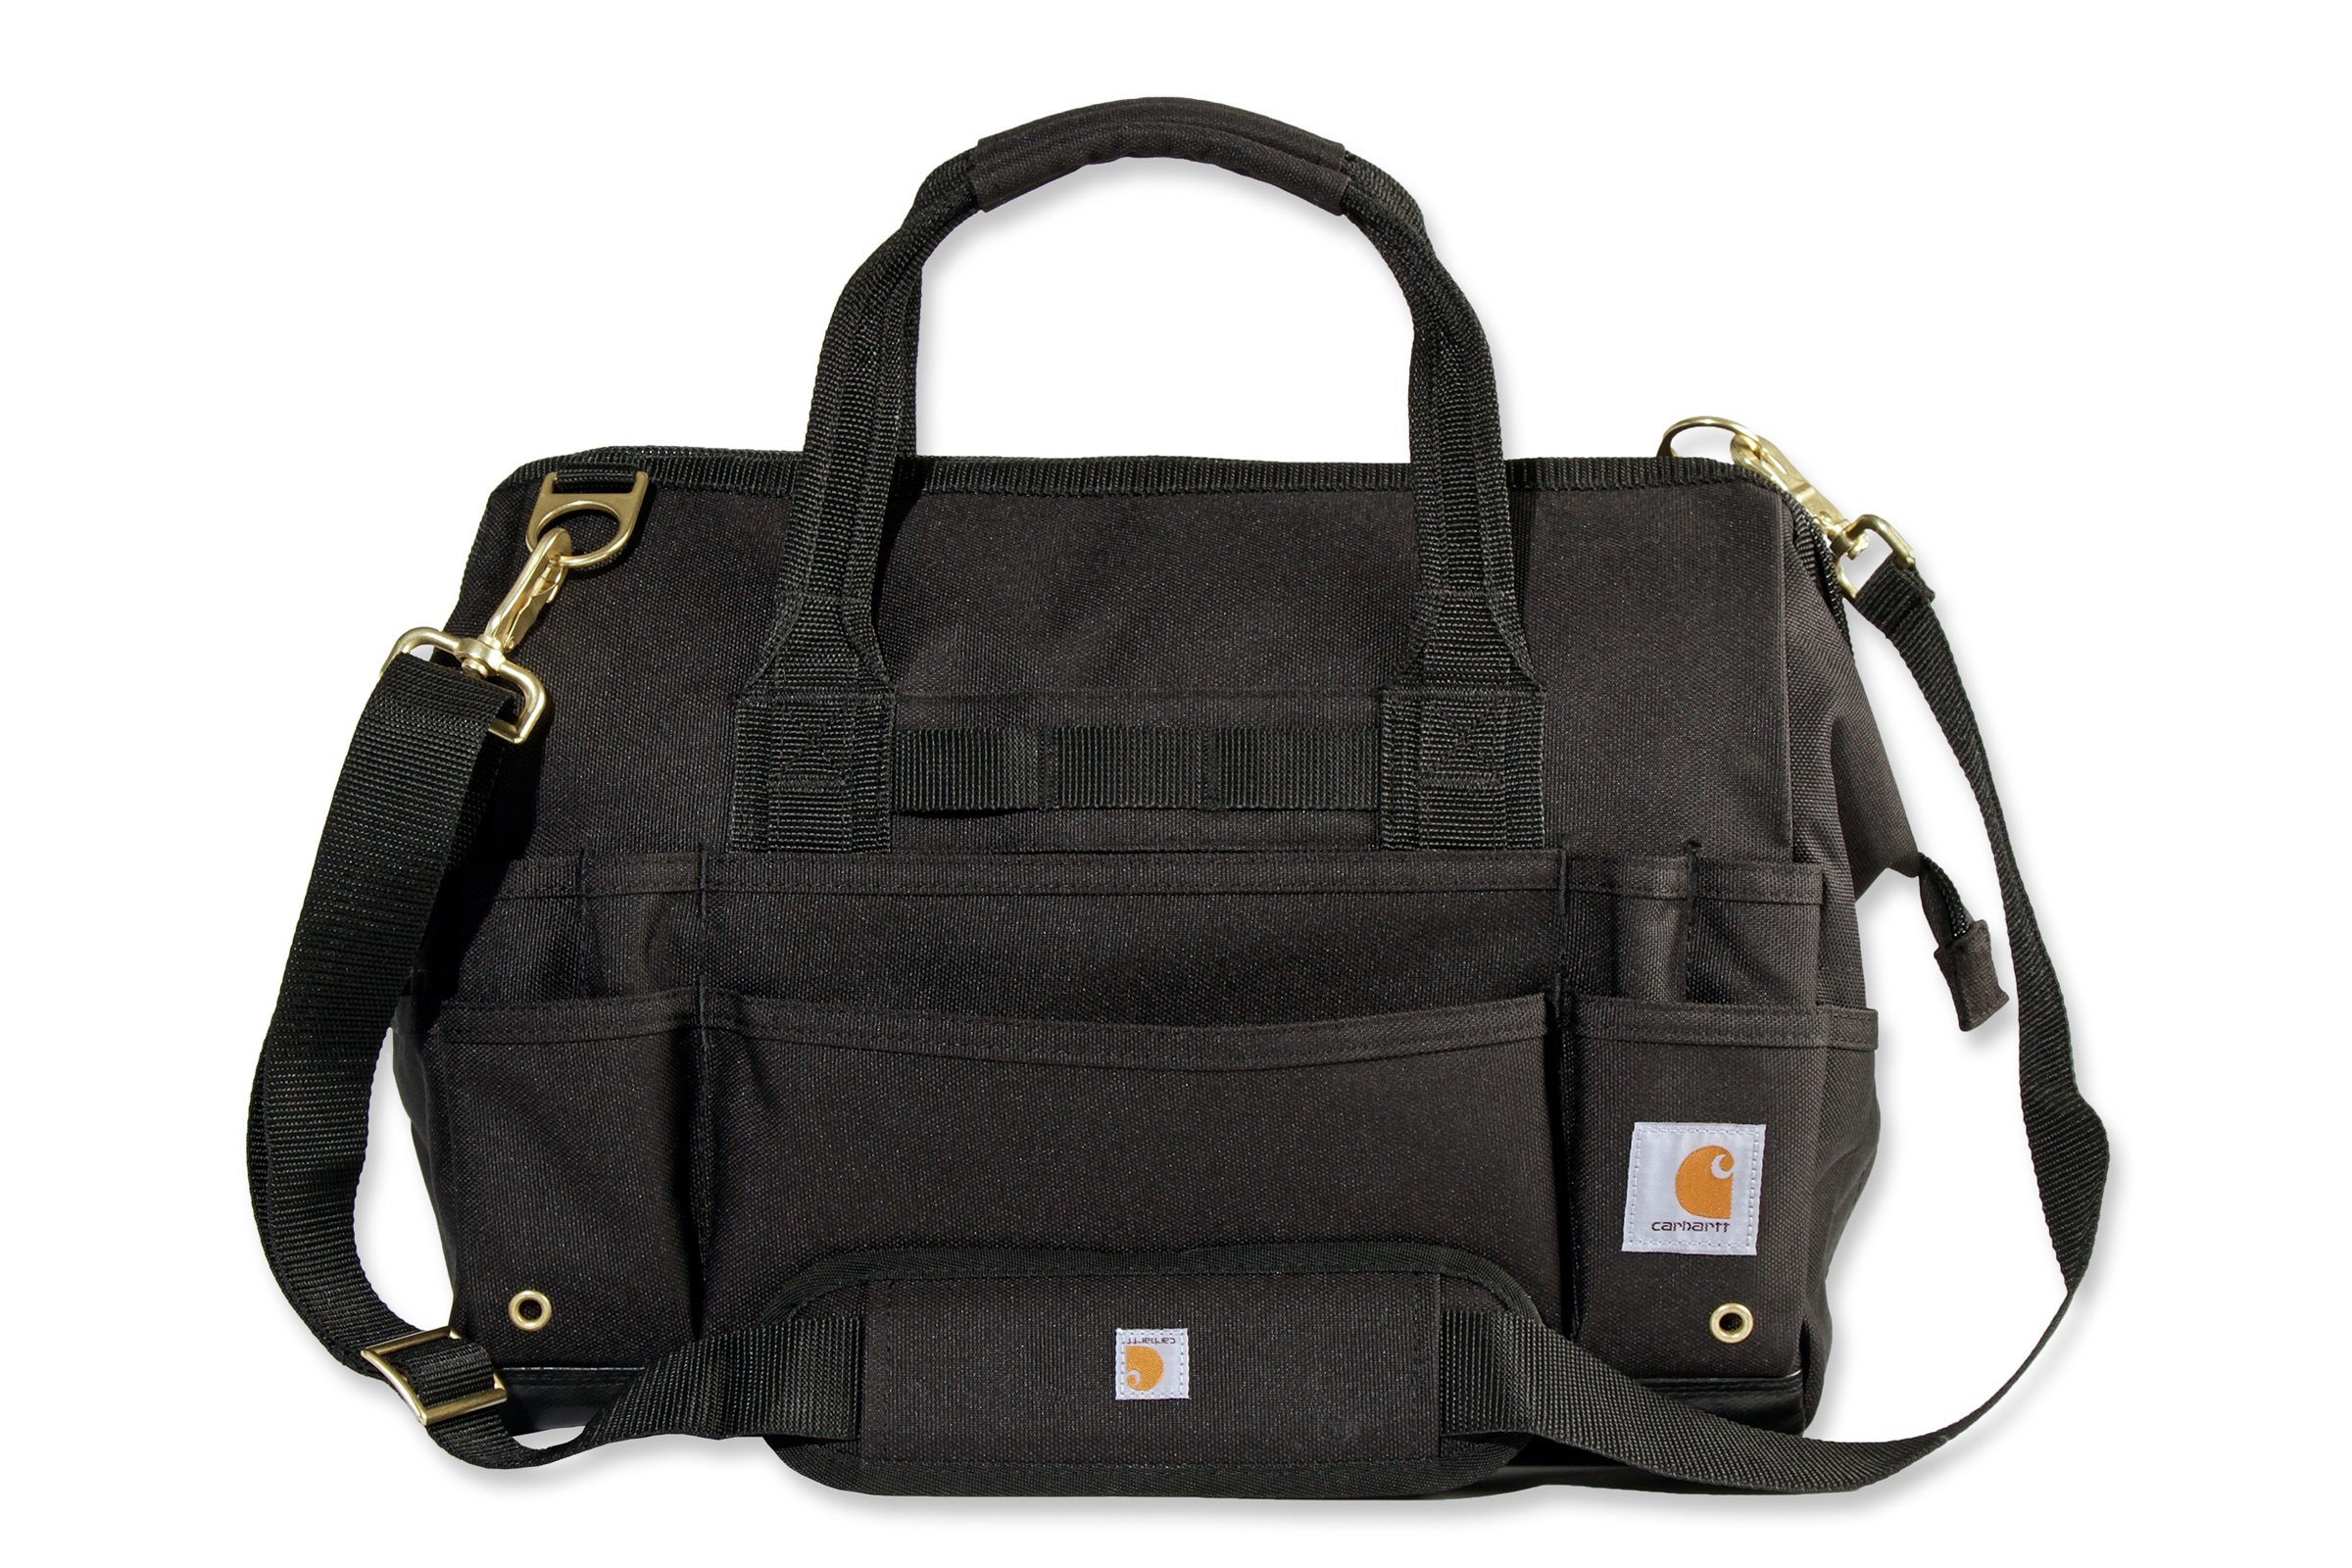 Carhartt Sporttasche Carhartt Werkzeugtasche Bag Tool 16 Legacy black Inch